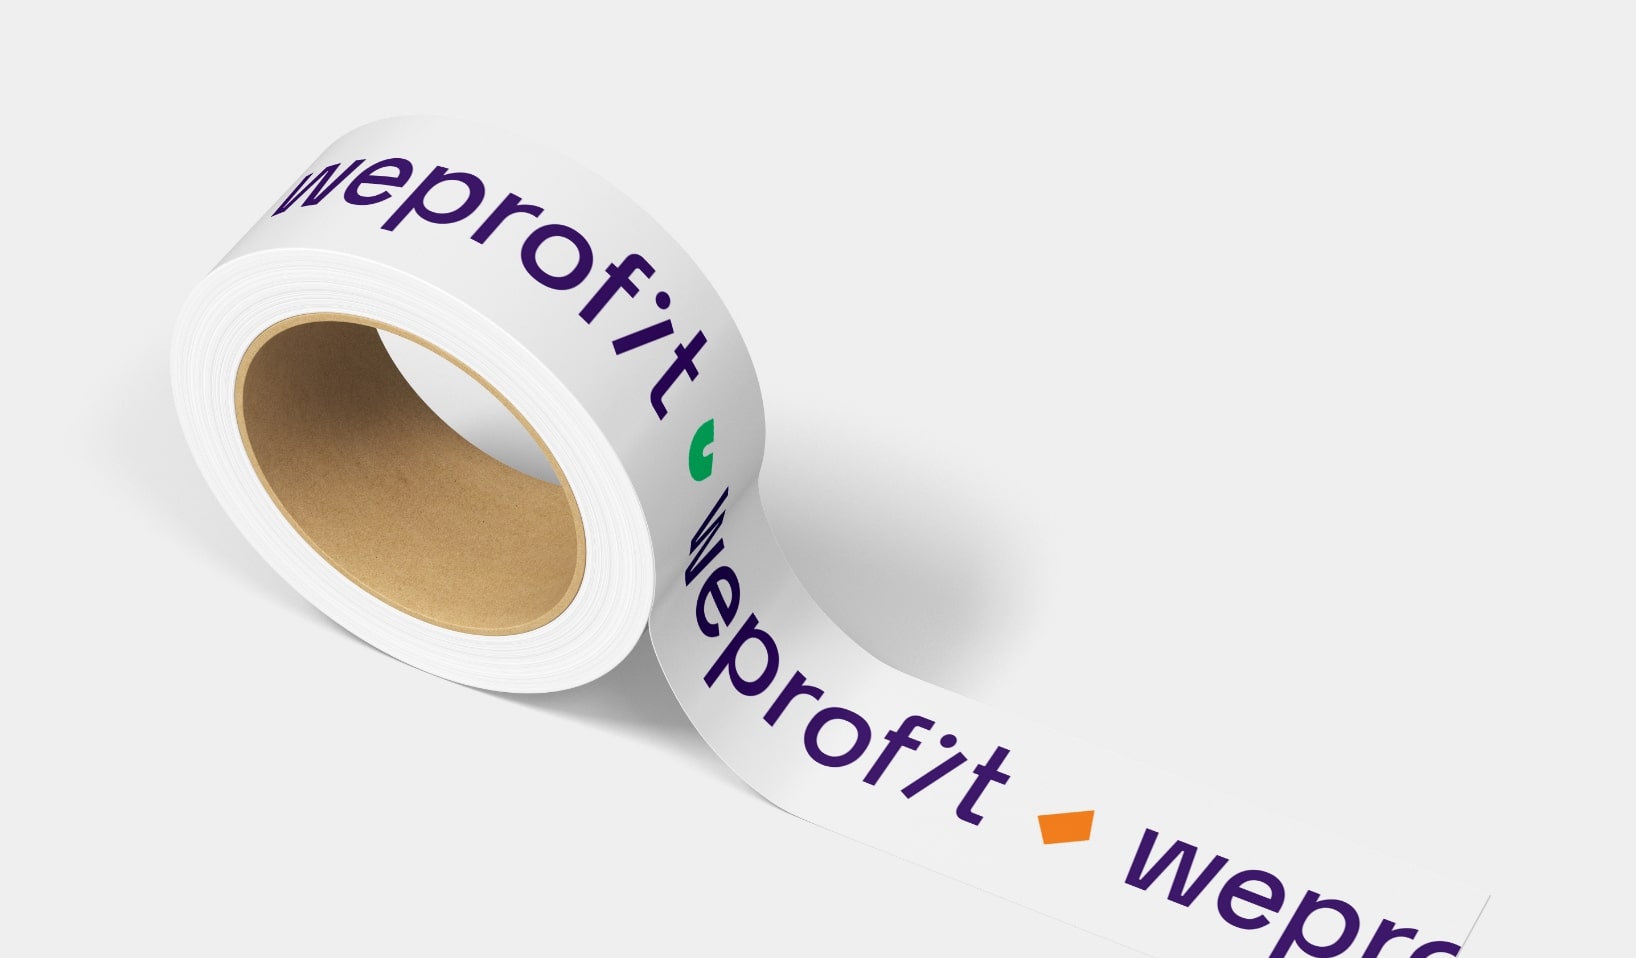 软件初创公司Weprofit品牌视觉设计